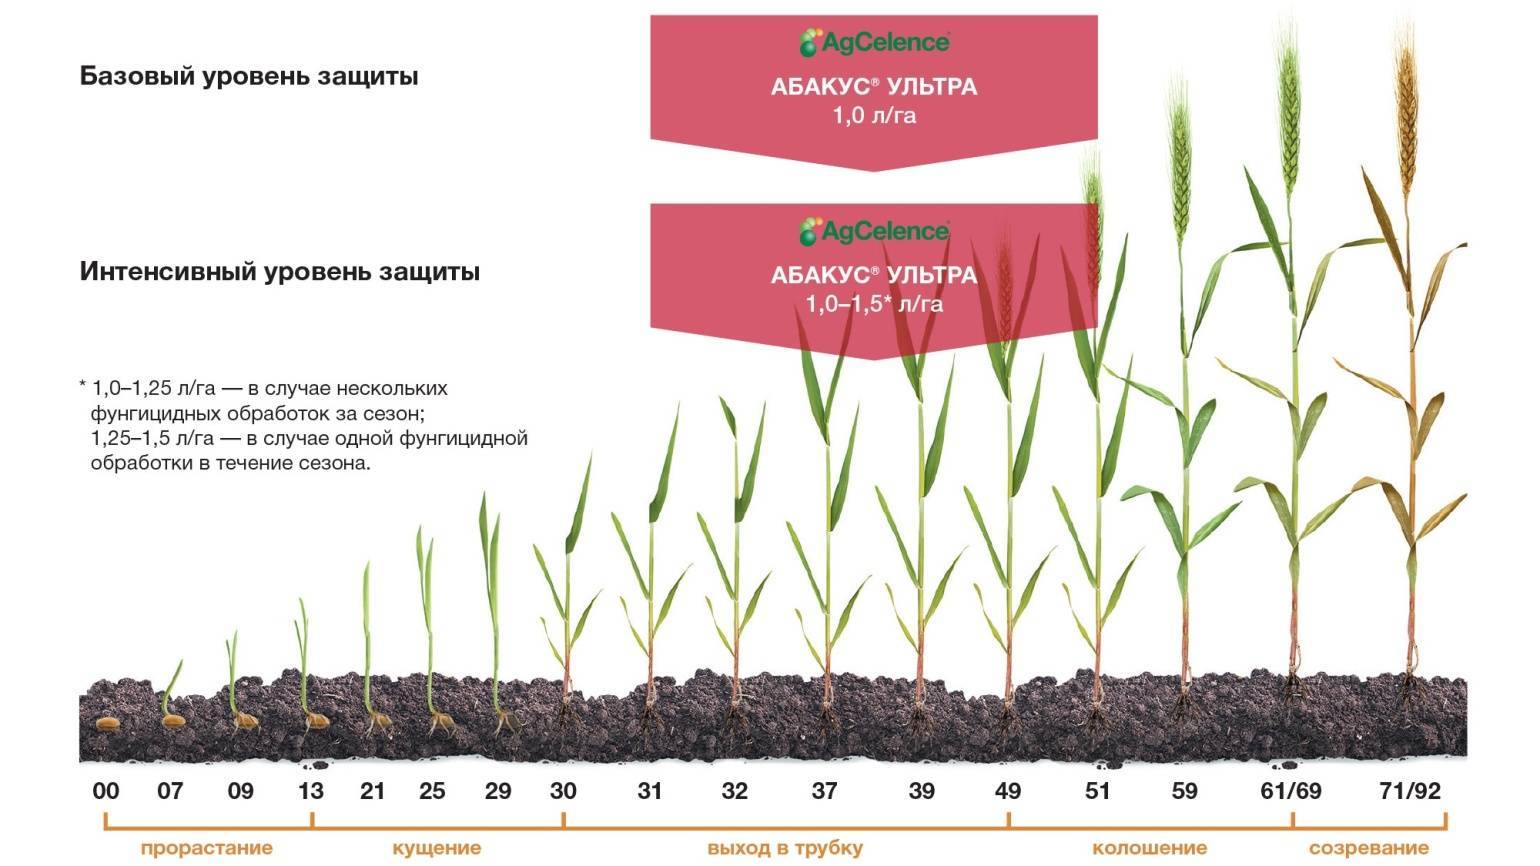 Дианат гербицид: надёжная защита для растений и зерновых культур